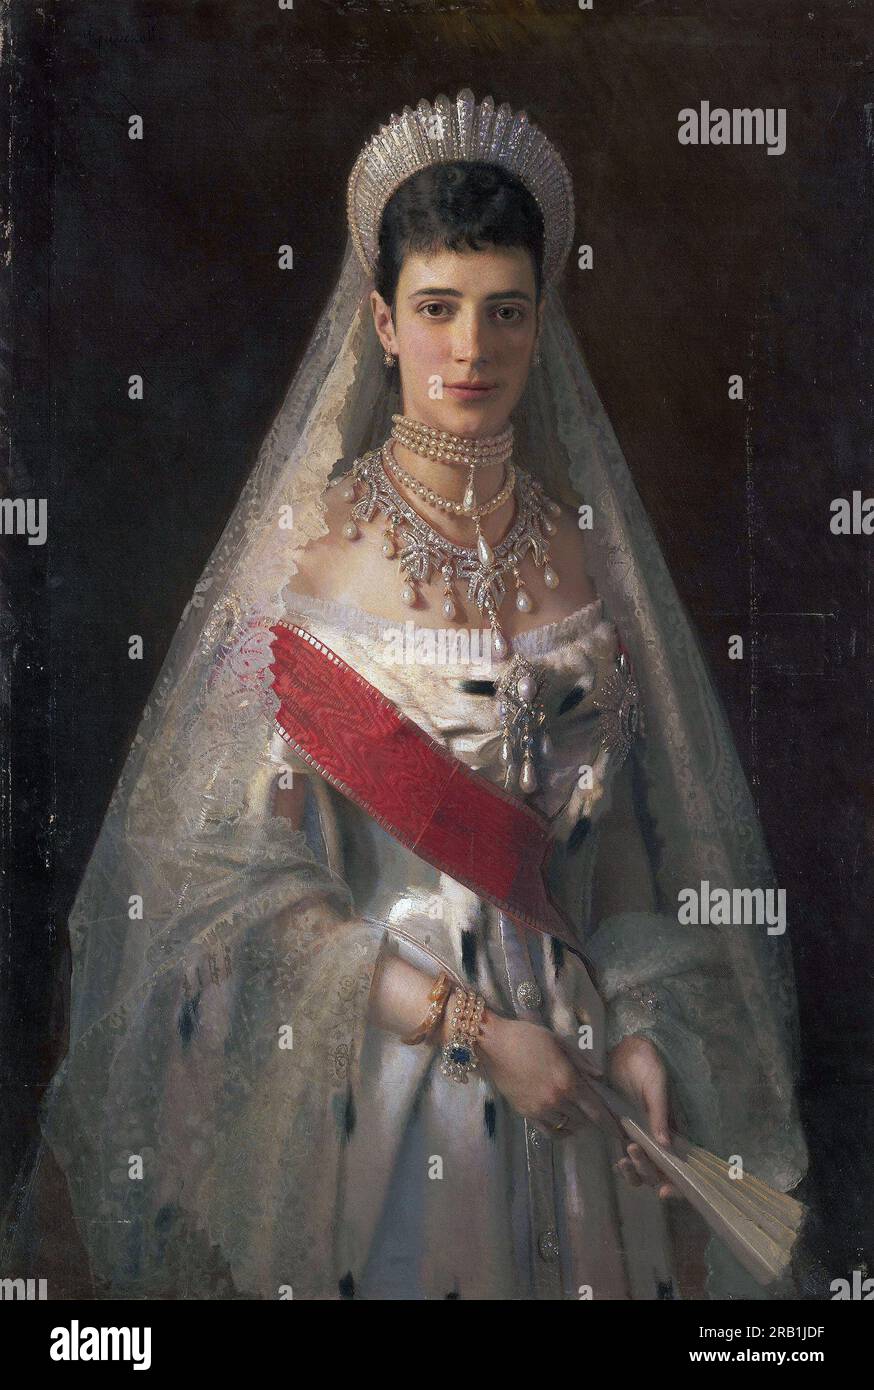 L'impératrice Maria Feodorovna, Maria Feodorovna, Maria Feodorovna, Maria Feodorovna (1847 – 1928), princesse Dagmar de Danemark, fut impératrice de Russie de 1881 à 1894 en tant qu'épouse de l'empereur Alexandre III Tableau de Ivan Kramskoi Banque D'Images